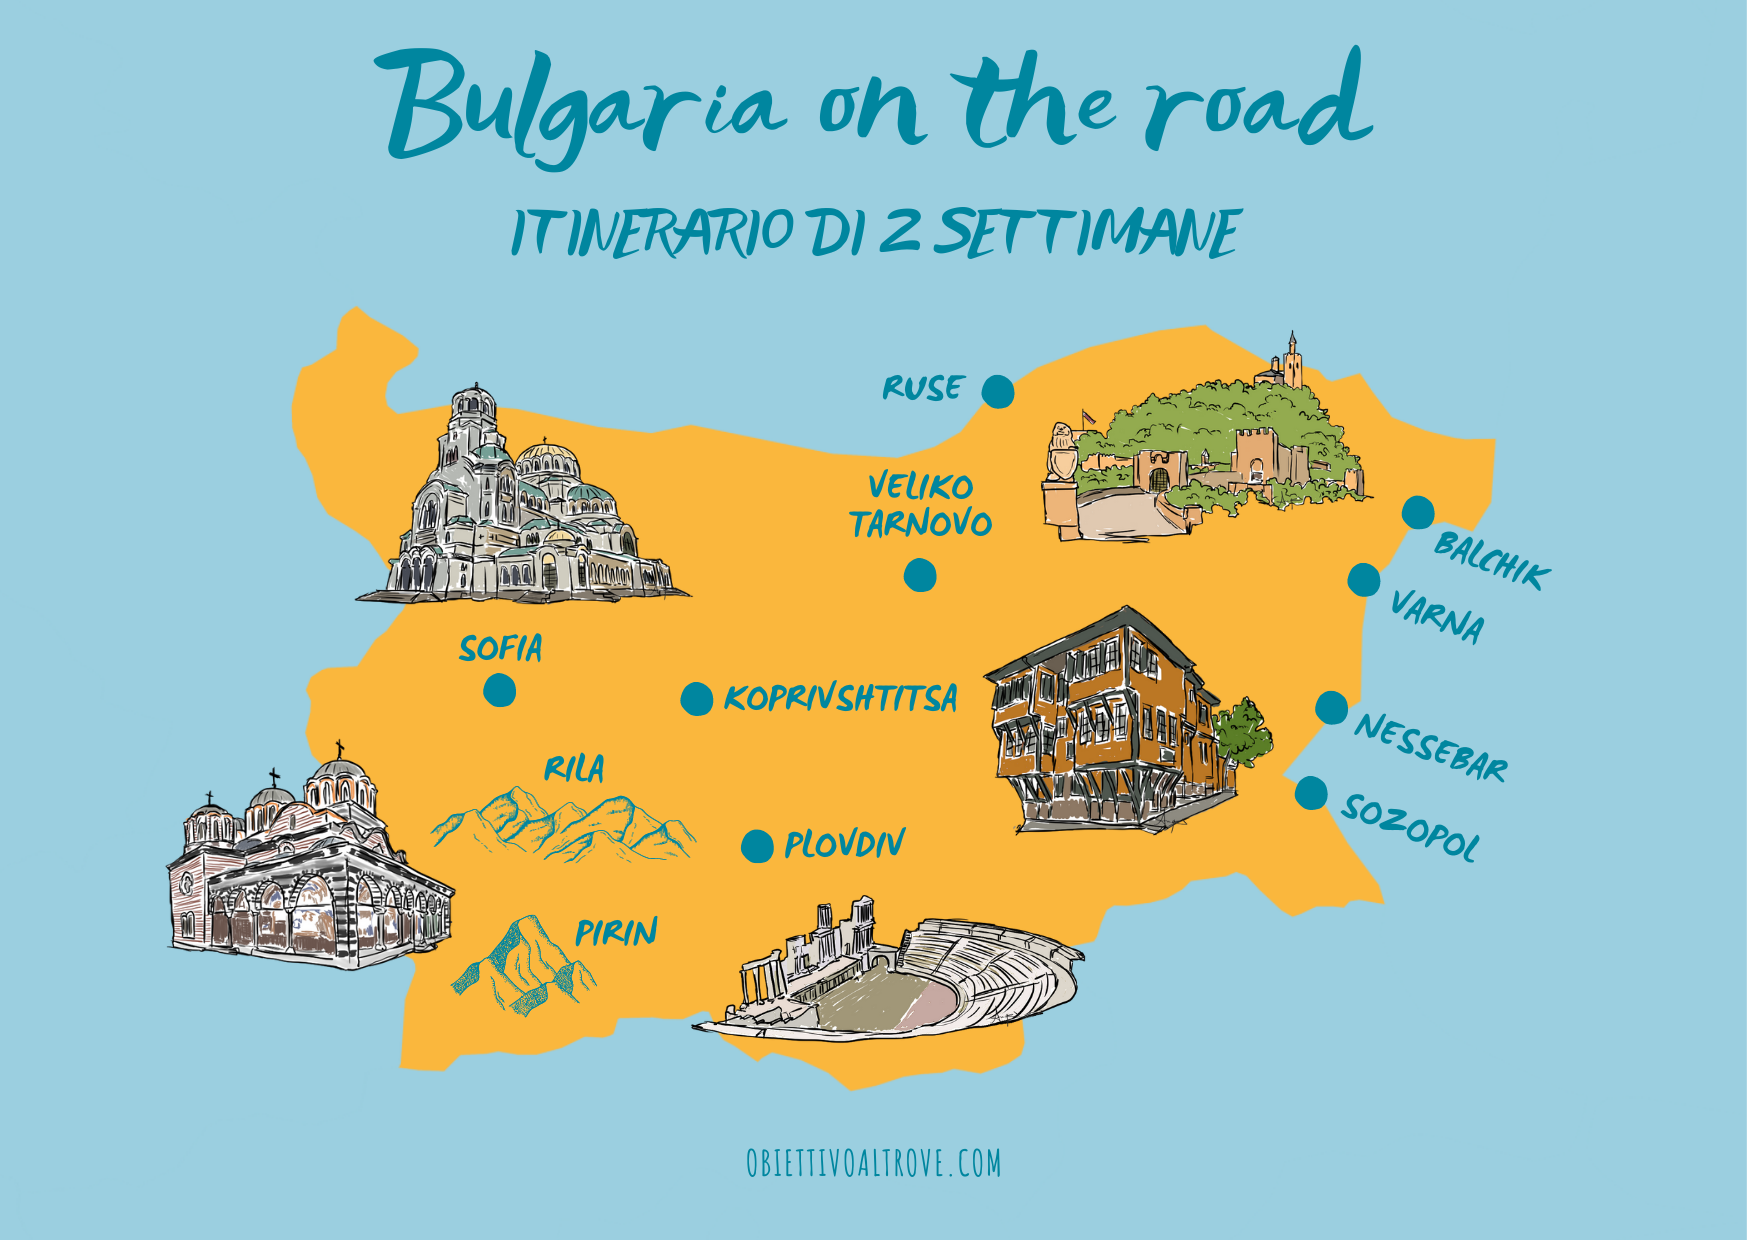 Mappa Road trip in Bulgaria - Itinerario di 2 settimane